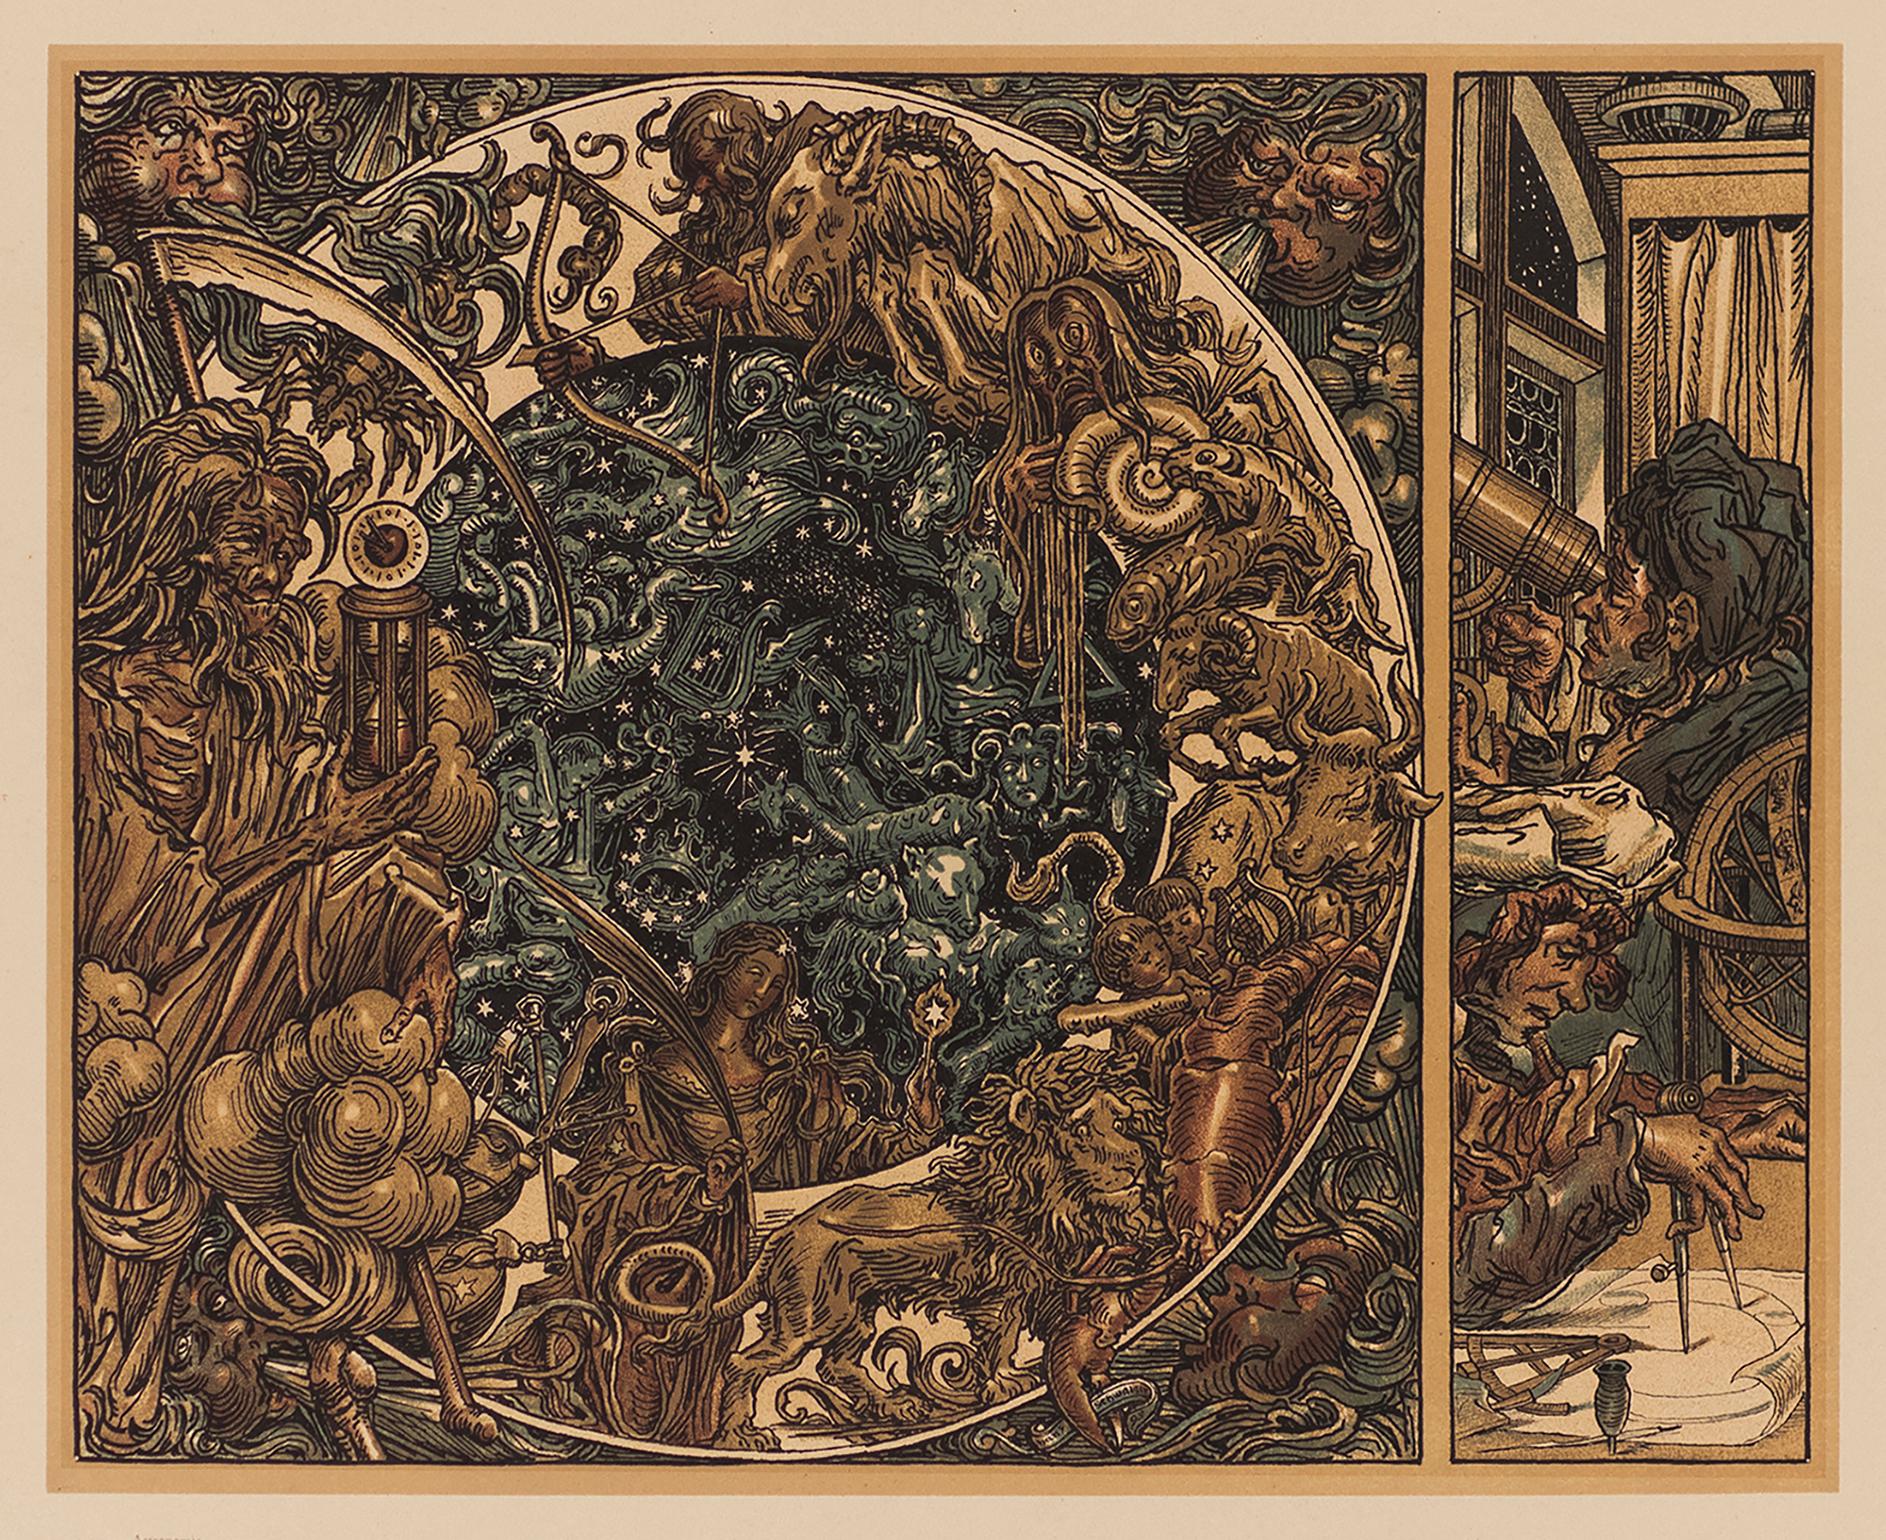 Astronomie, planche 120 de l'Allégorien de Gerlach, lithographie de la Sécession viennoise - Print de Hanus Schwaiger